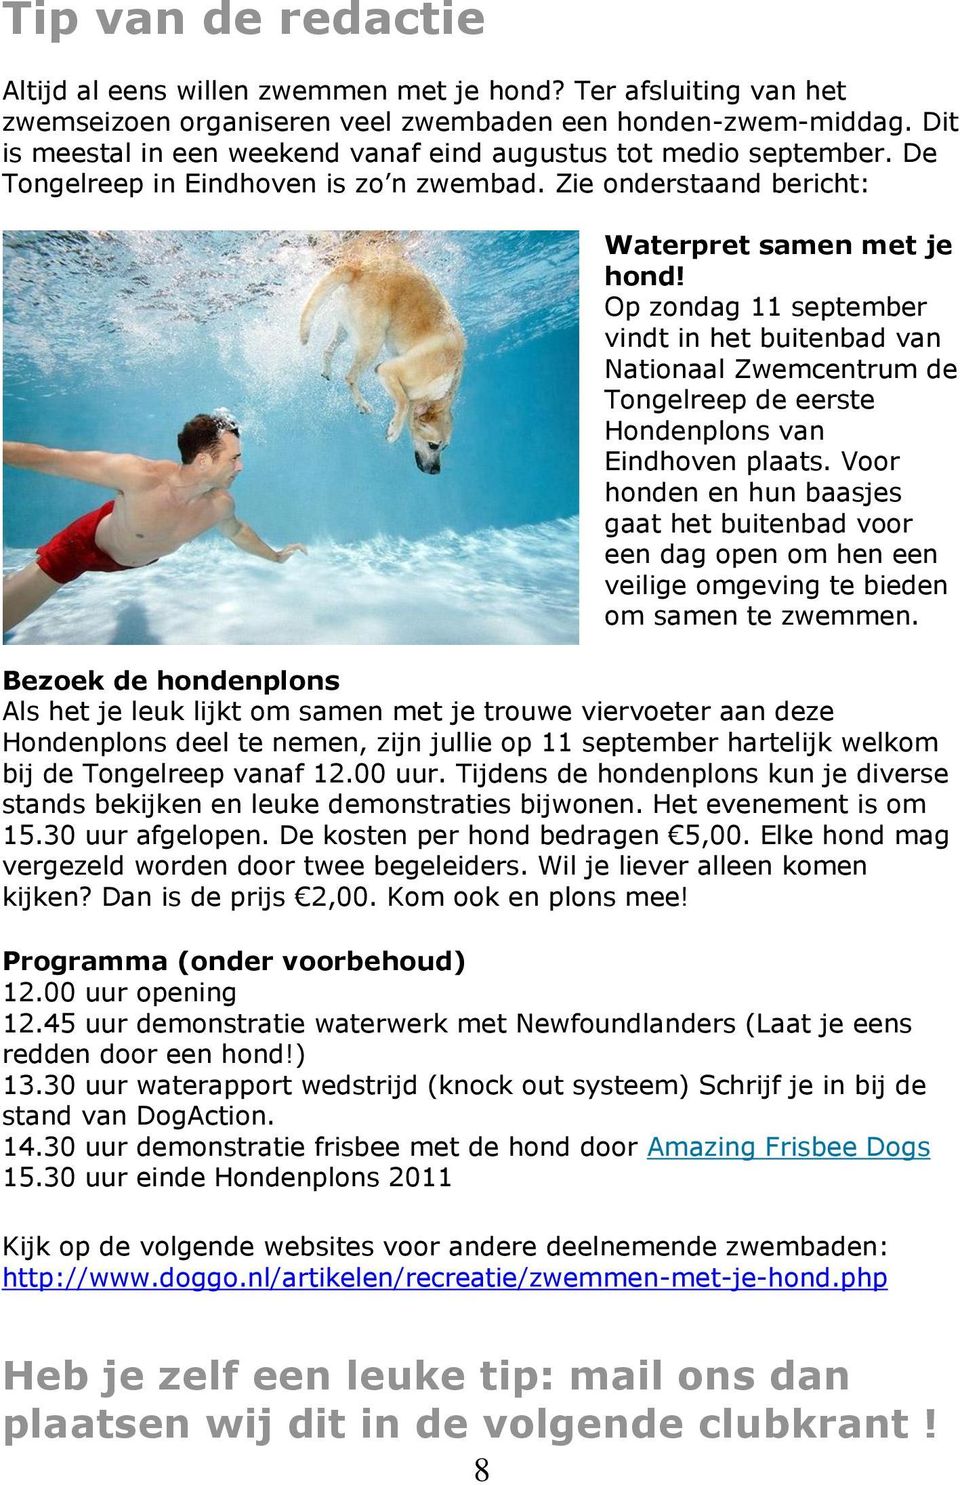 Op zondag 11 september vindt in het buitenbad van Nationaal Zwemcentrum de Tongelreep de eerste Hondenplons van Eindhoven plaats.